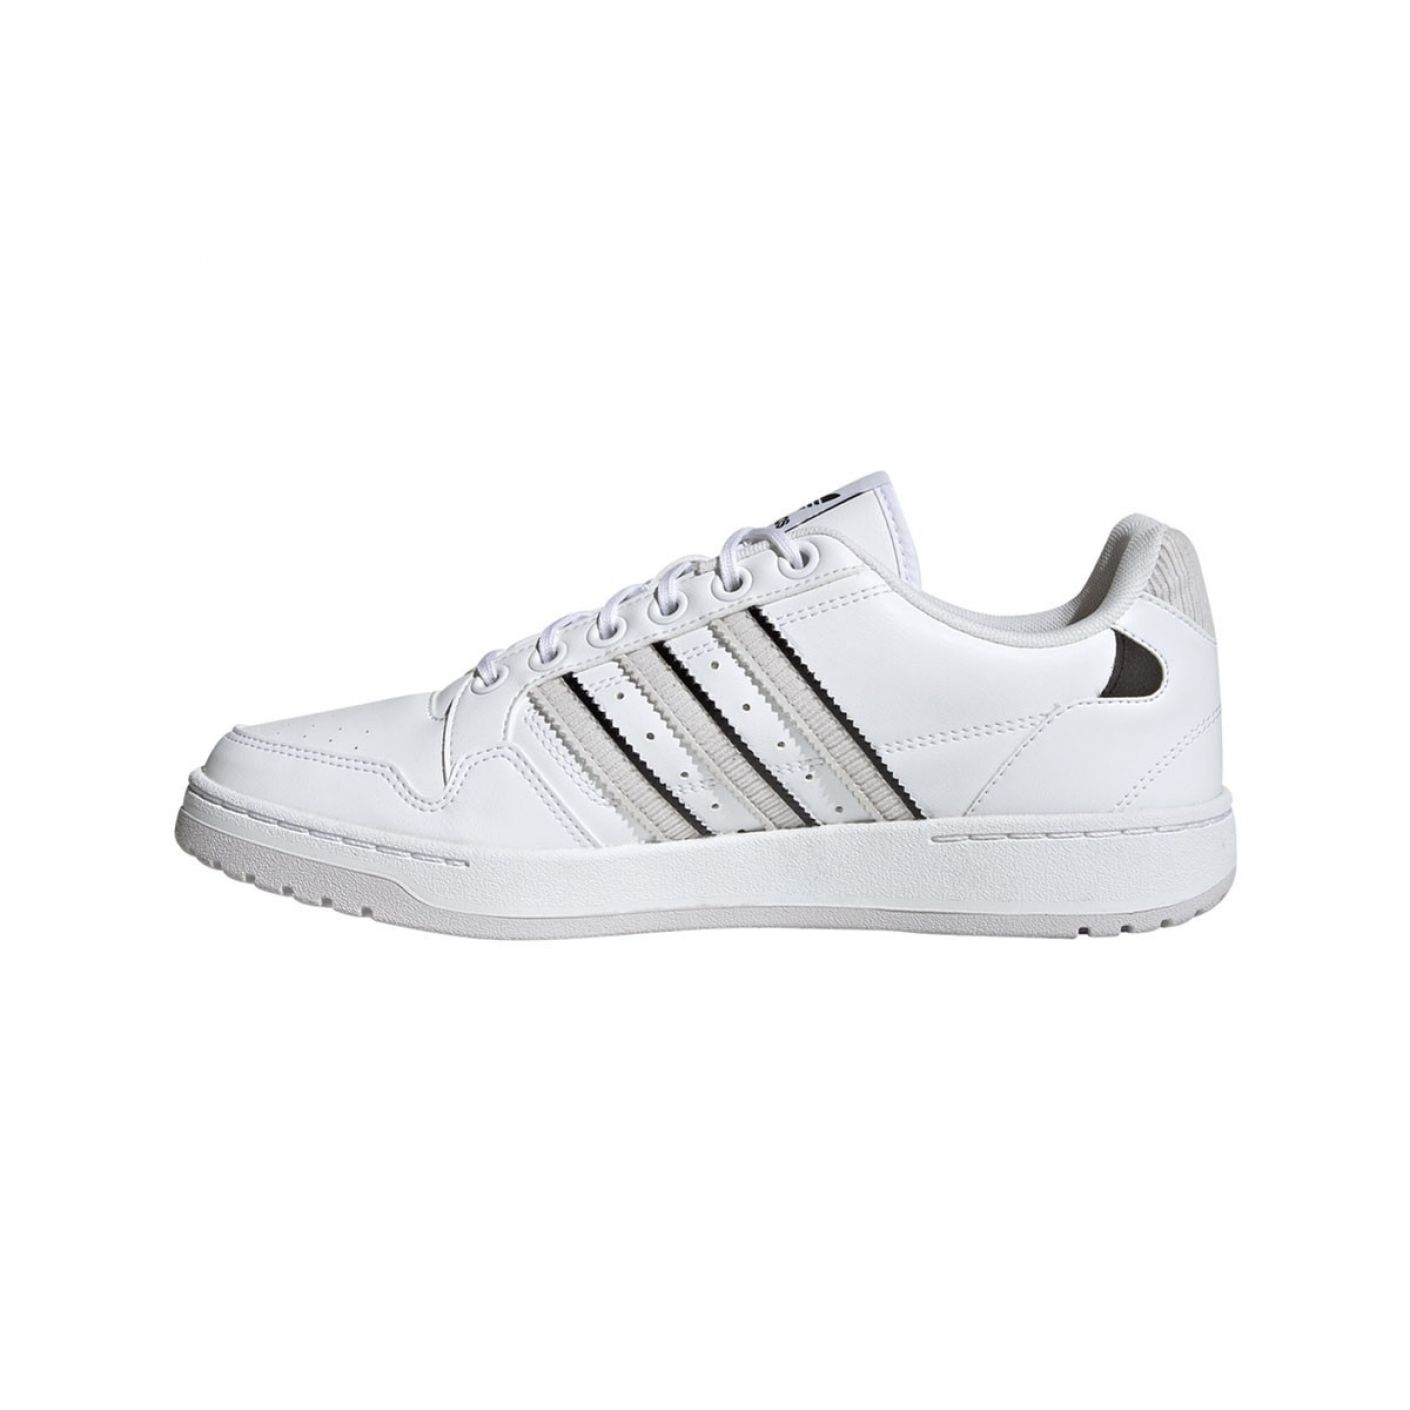 Adidas Ny 90 Stripes White-Grey